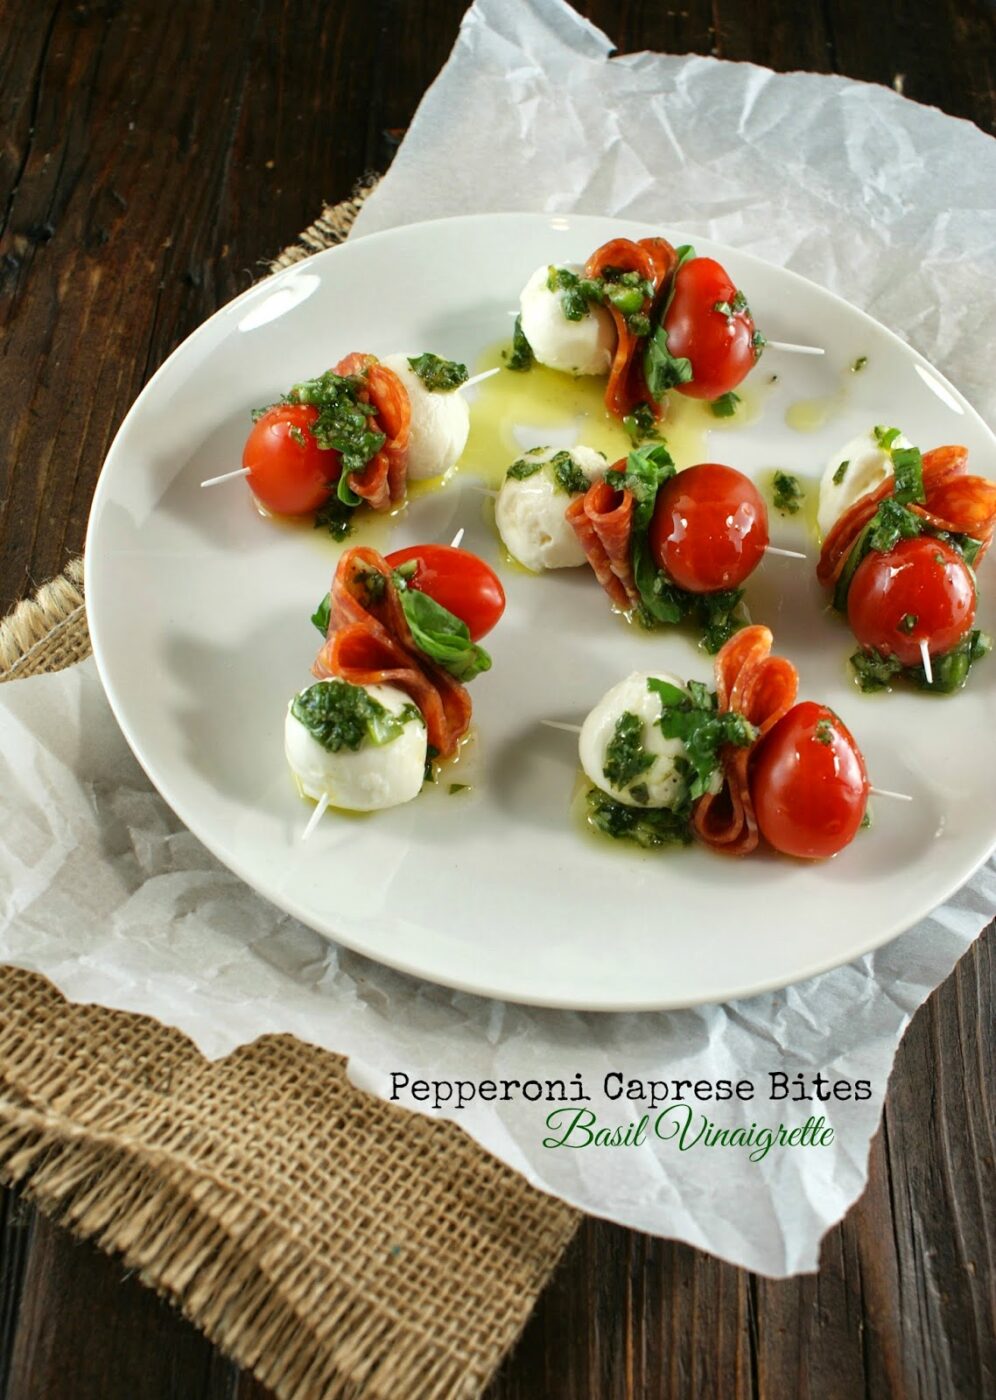 Pepperoni Caprese Bites with Basil Vinaigrette